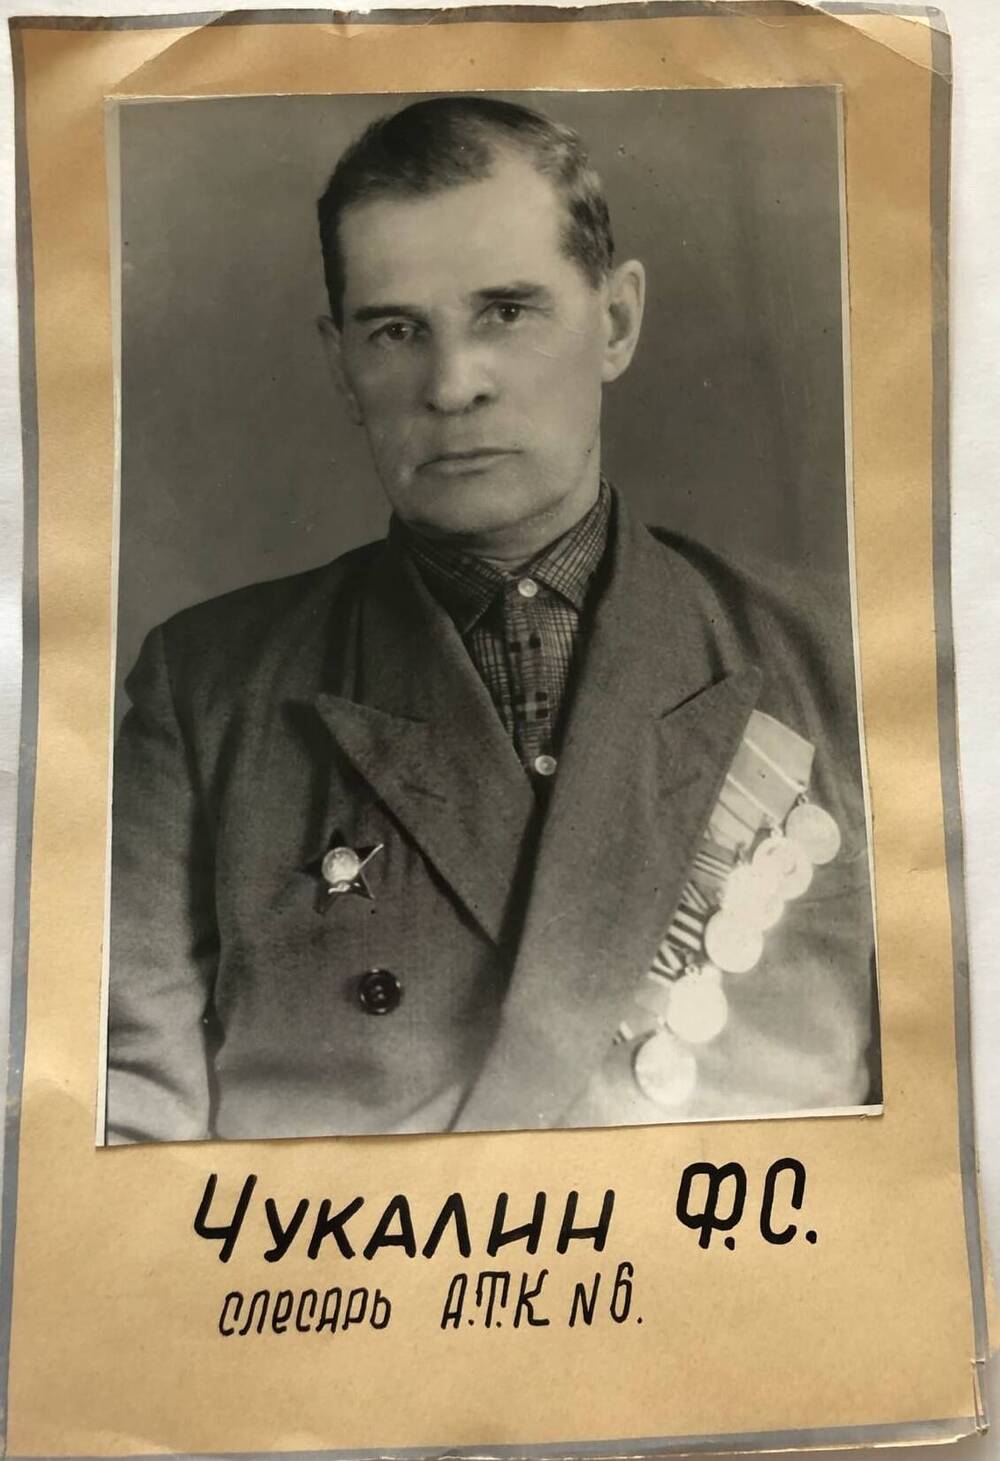 Фотография Чукалина Ф.С., камышанина, участника Великой Отечественной войны 1941-1945 гг., защитника Сталинграда